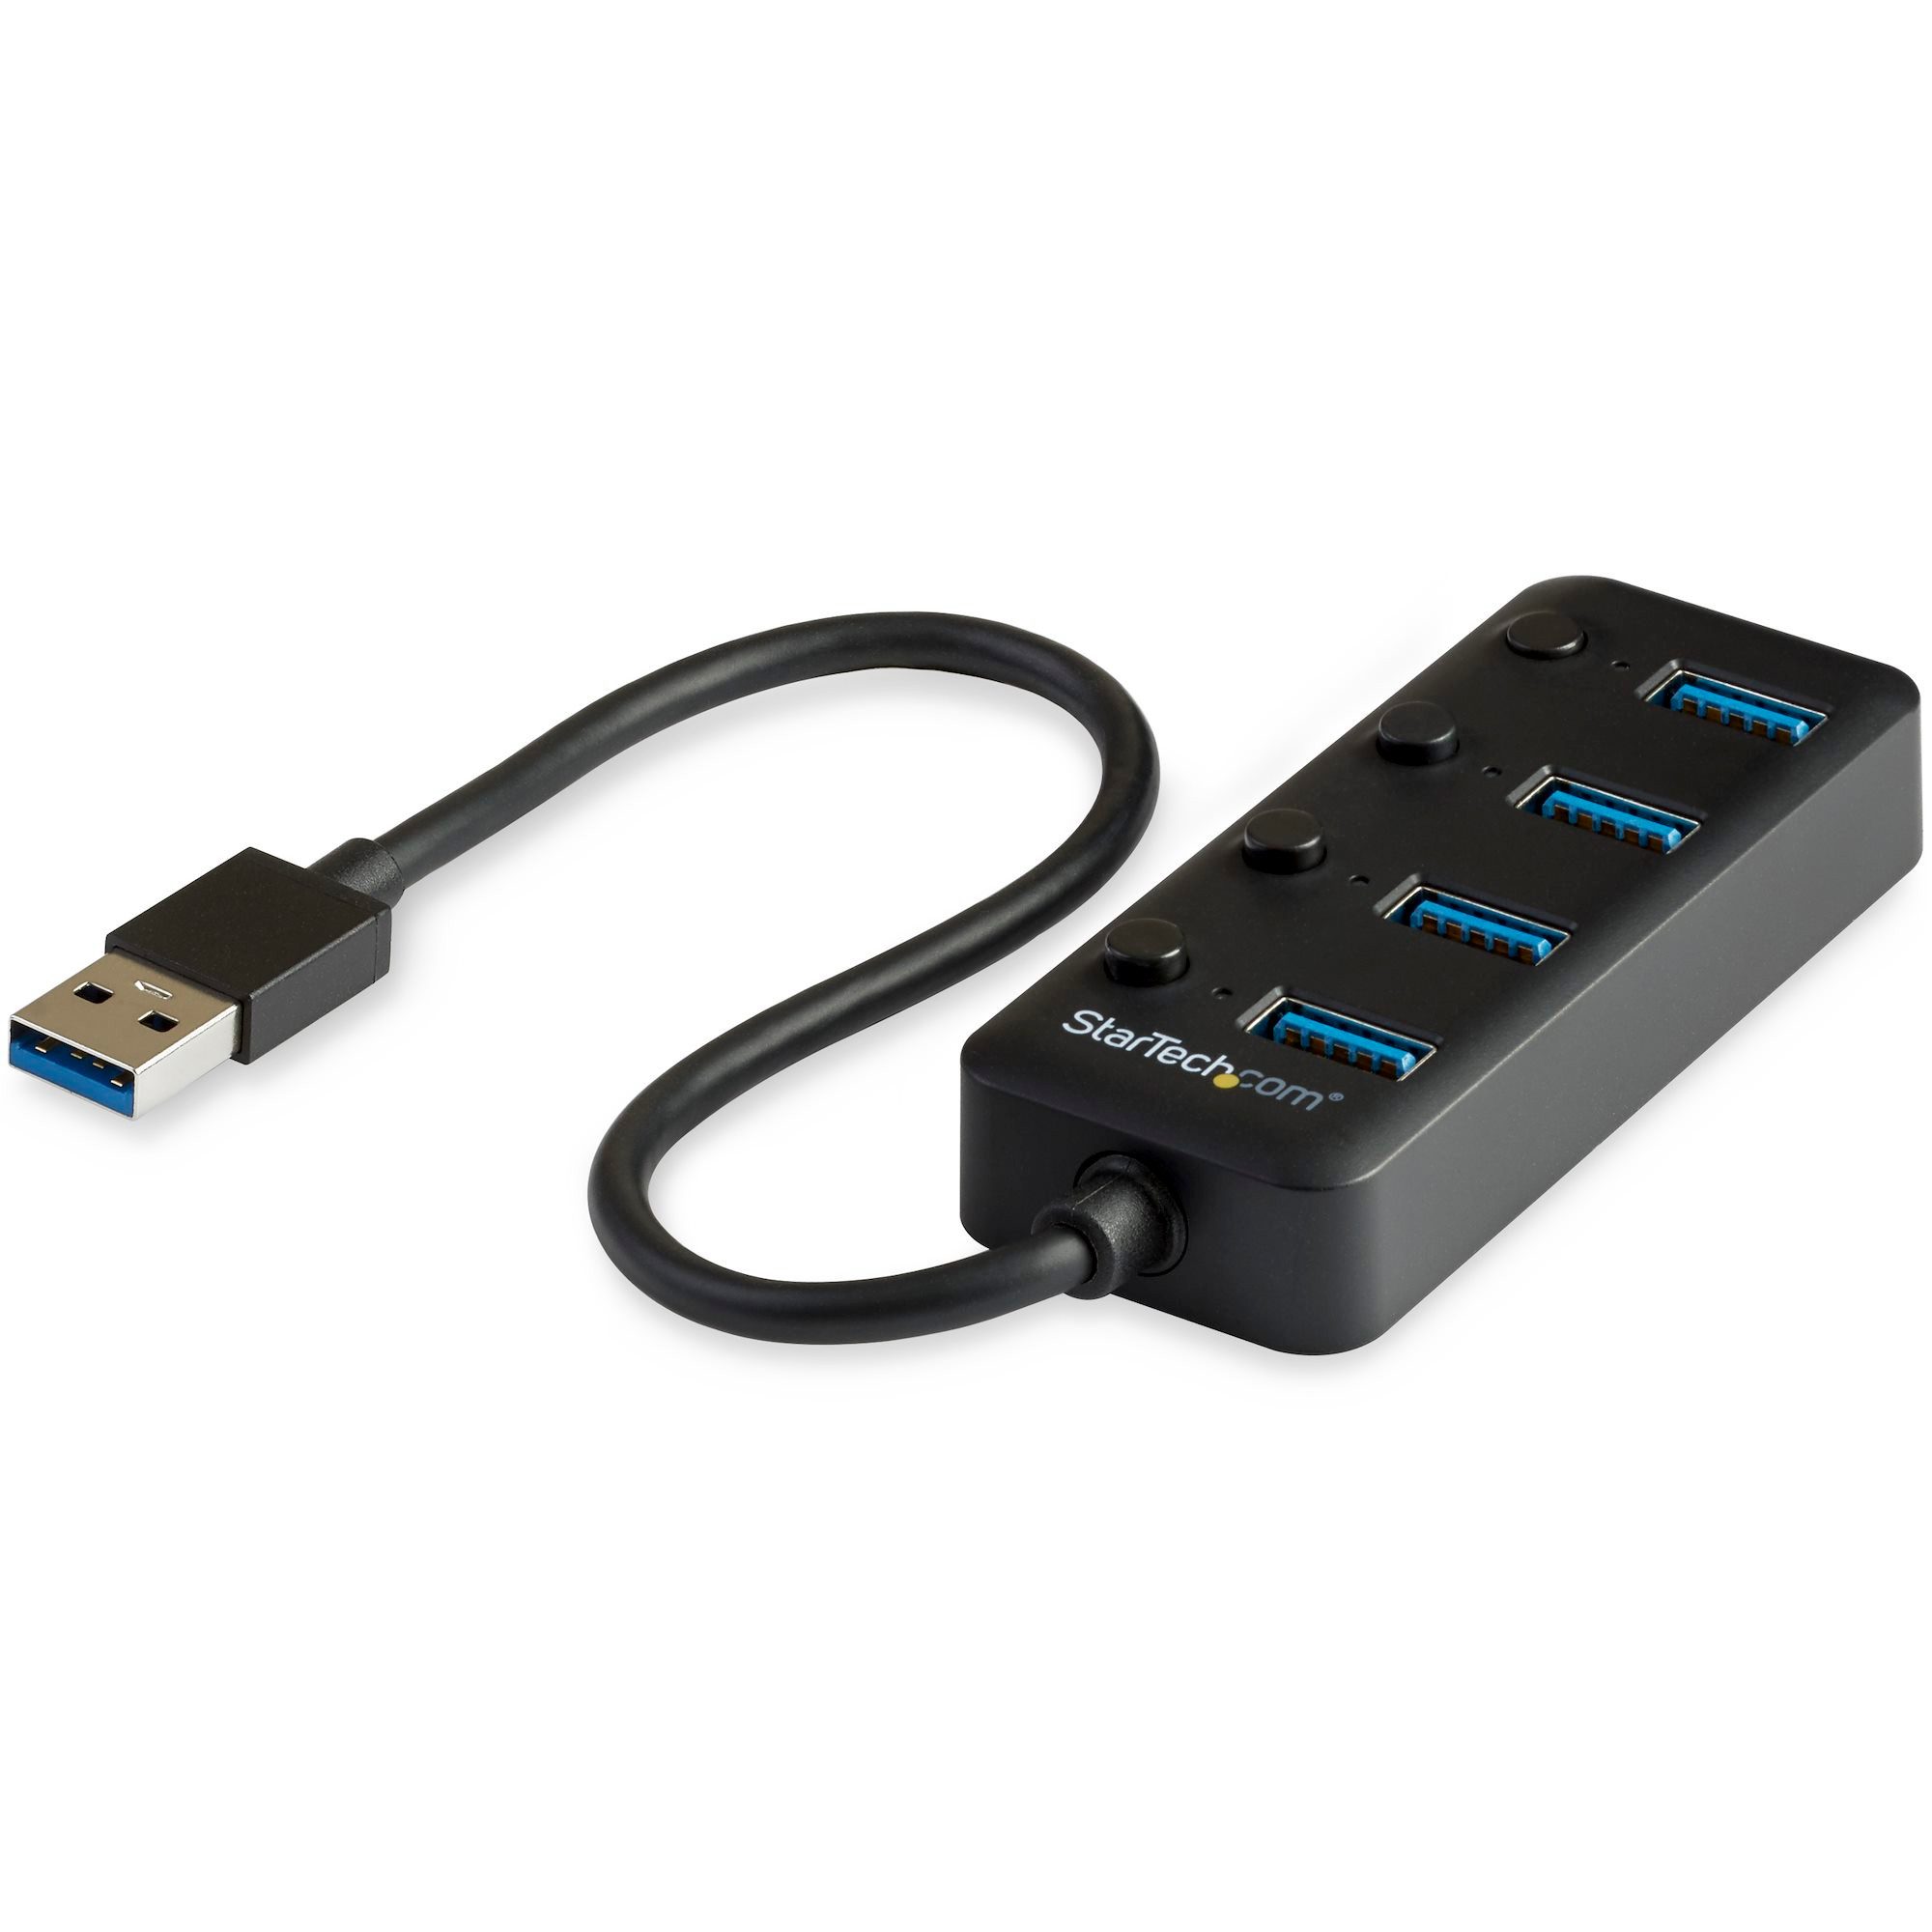 Startech.com USB-Verteiler STARTECH.COM 4 Port USB3.0 Hub - 4xUSB-A mit individuellen An/Aus-Scha